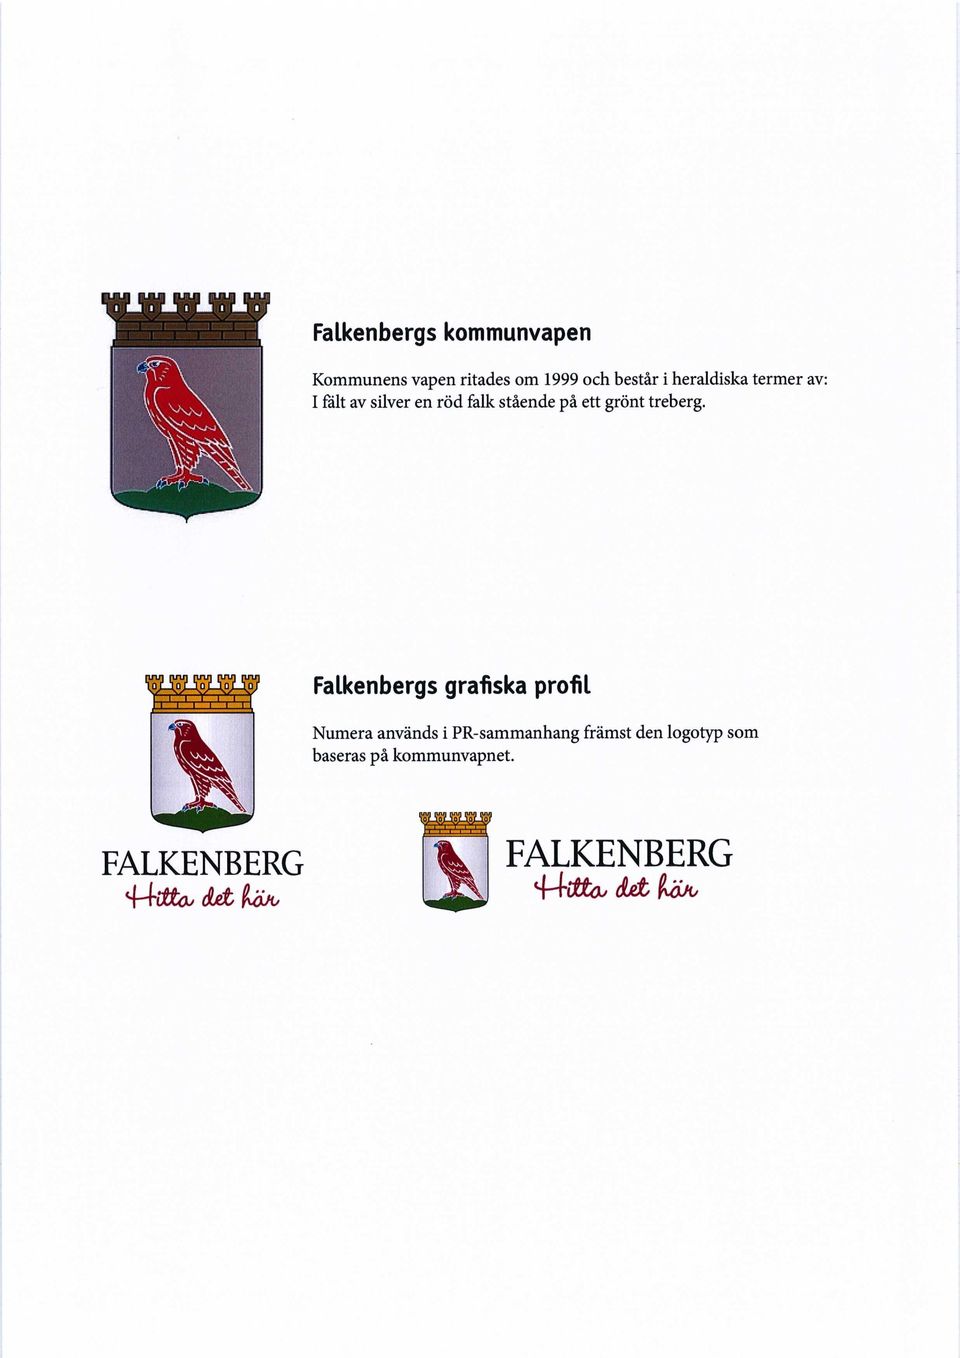 1Q L_I Q J_I Q L_i Q JLIQ / i ' i ' i ' i 'VT - Falkenbergs grafiska profil